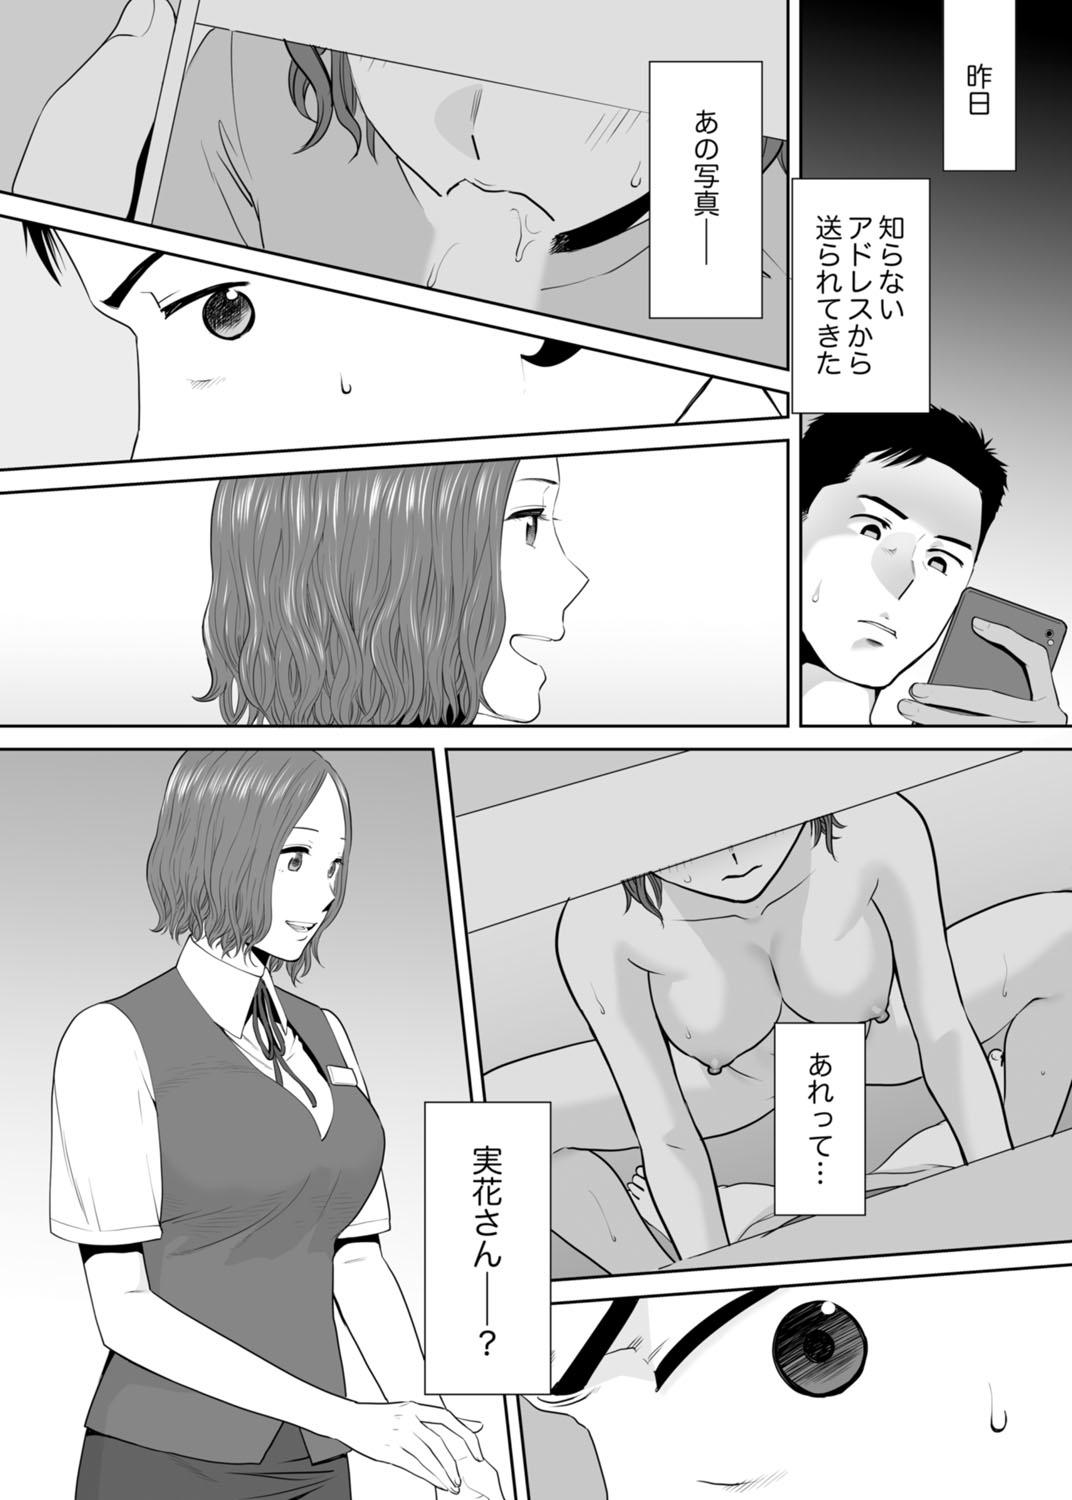 Puto "Otto no Buka ni Ikasarechau..." Aragaezu Kanjite Shimau Furinzuma 11 Plumper - Page 4